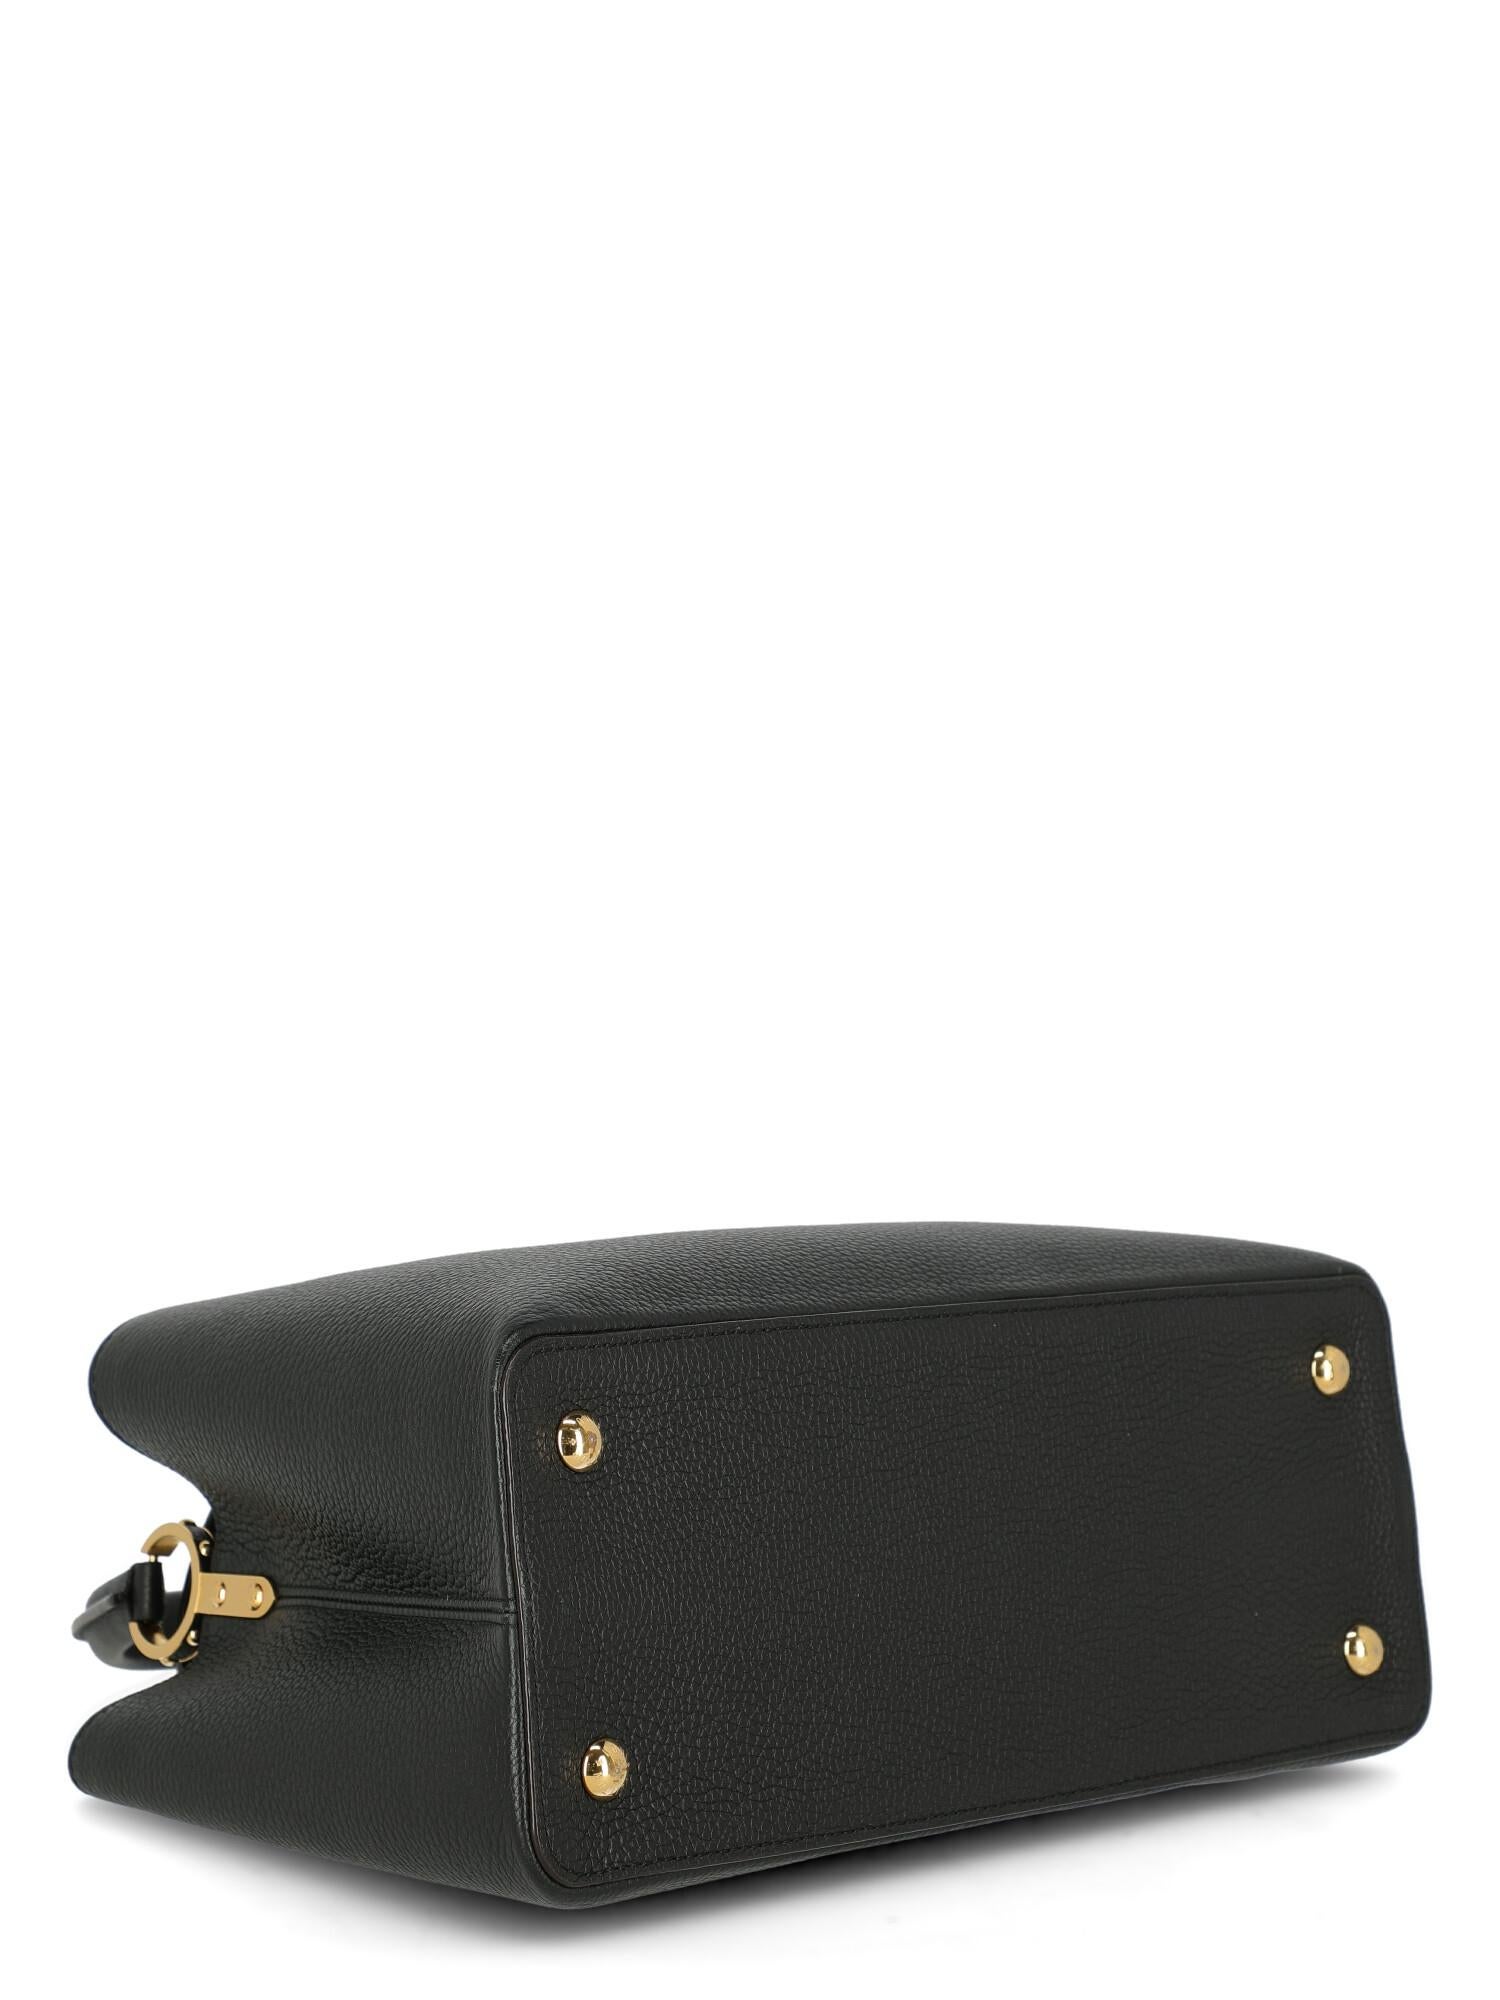 Louis Vuitton Women's Handbag Capucines Black Leather For Sale 2